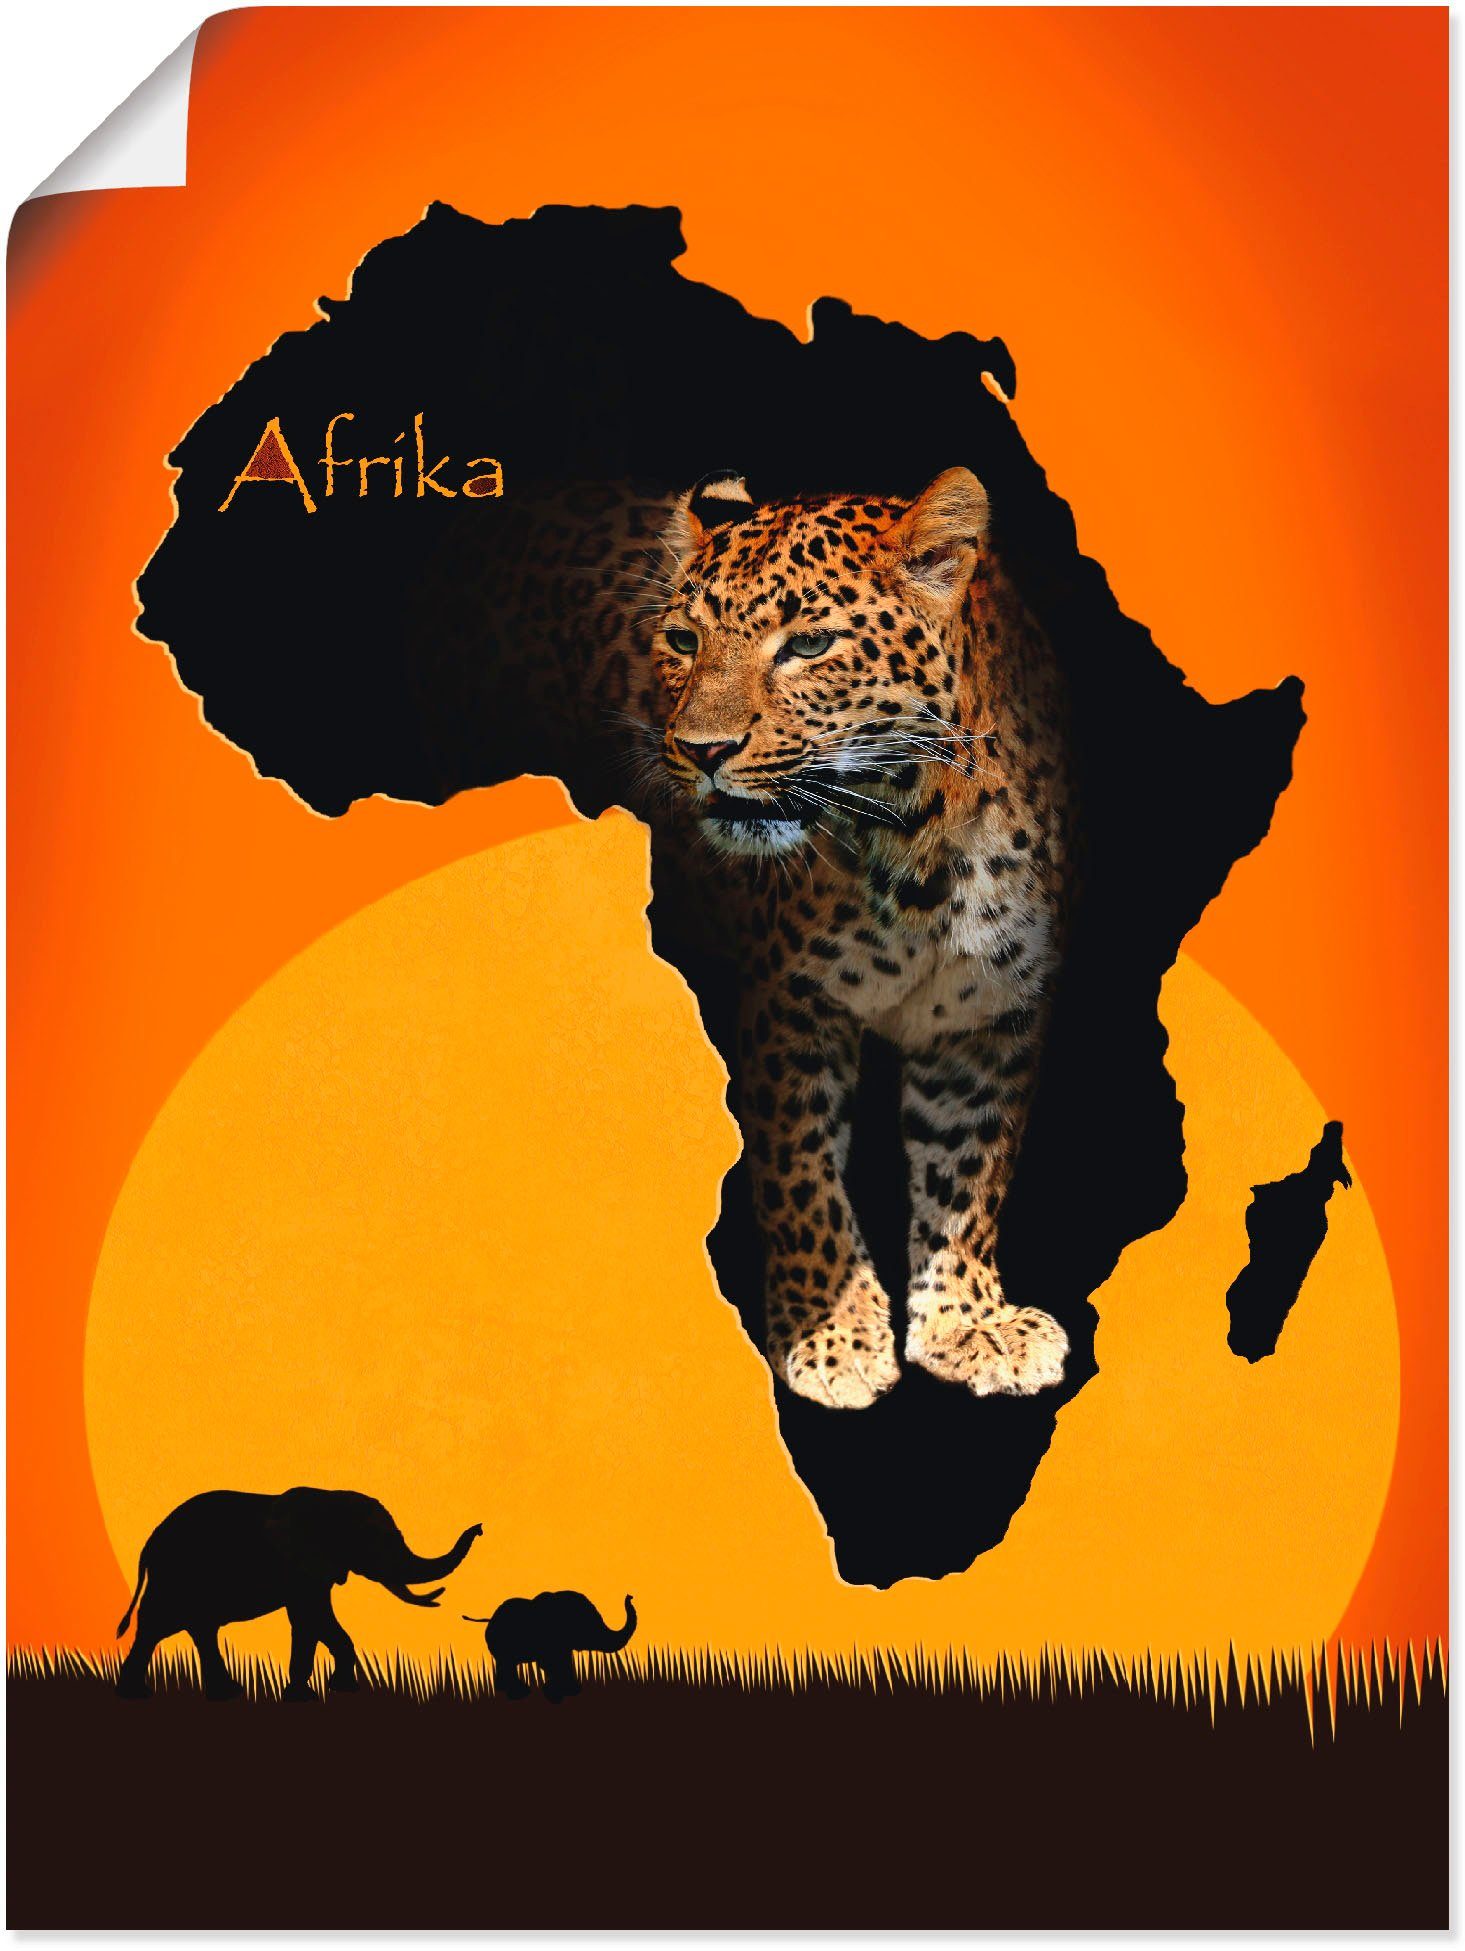 Artland Artprint Afrika het zwarte continent in vele afmetingen & productsoorten -artprint op linnen, poster, muursticker / wandfolie ook geschikt voor de badkamer (1 stuk)